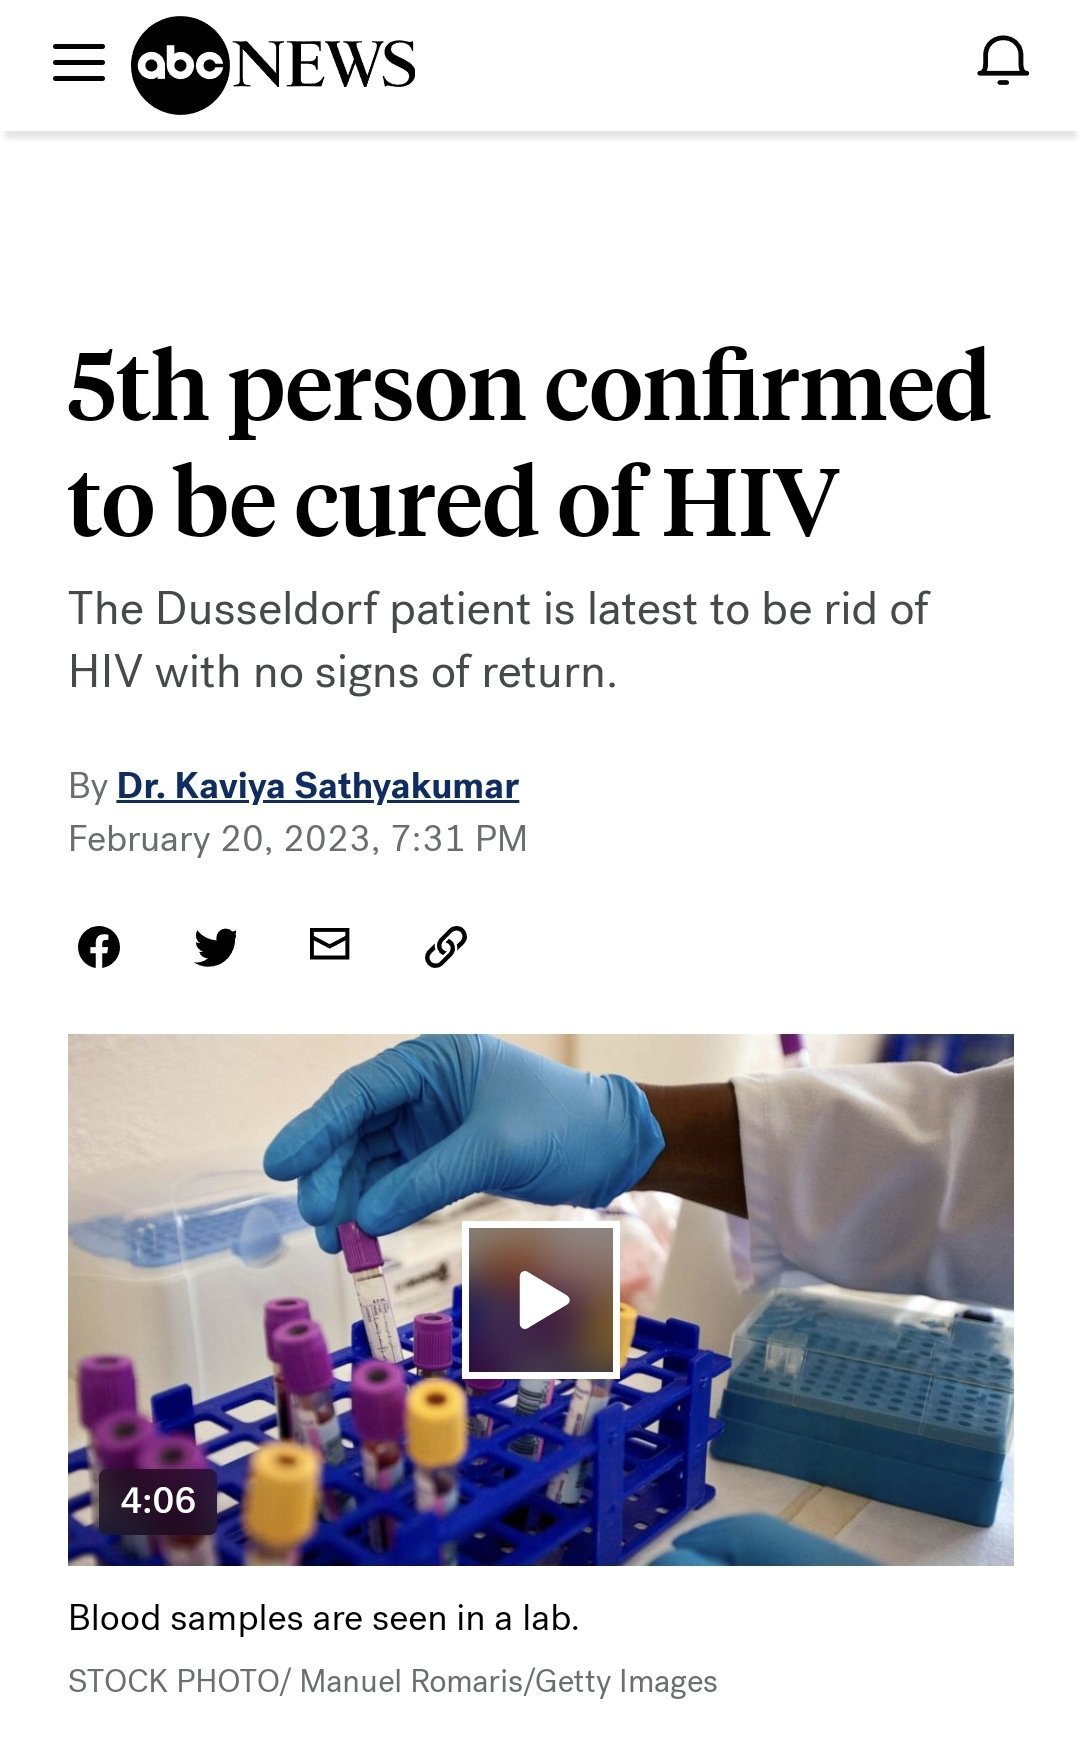  پنجمین فرد مبتلا به HIV بهبود کامل یافت و هیچ نشانه ای از بازگشت وجود ندارد.